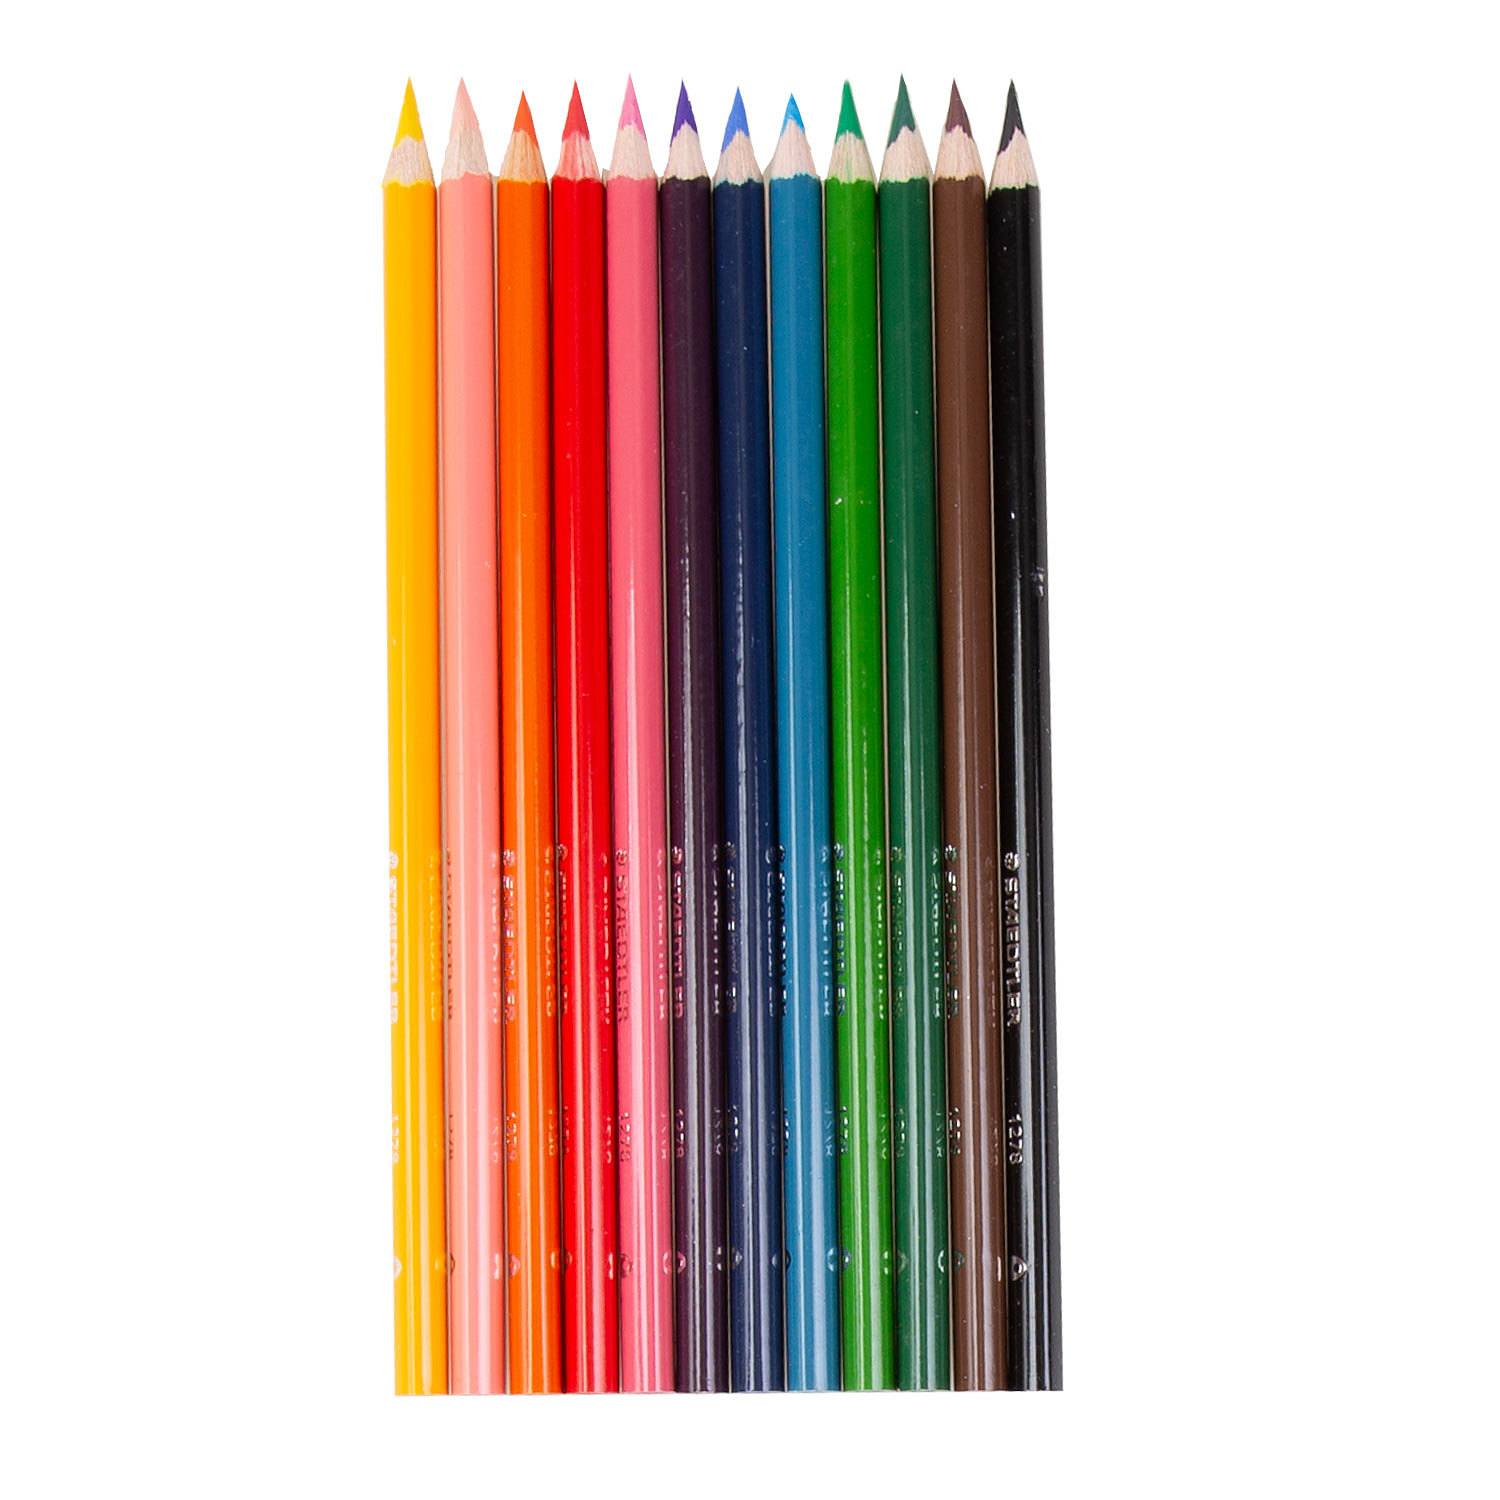 Crayon de couleur — Wikipédia